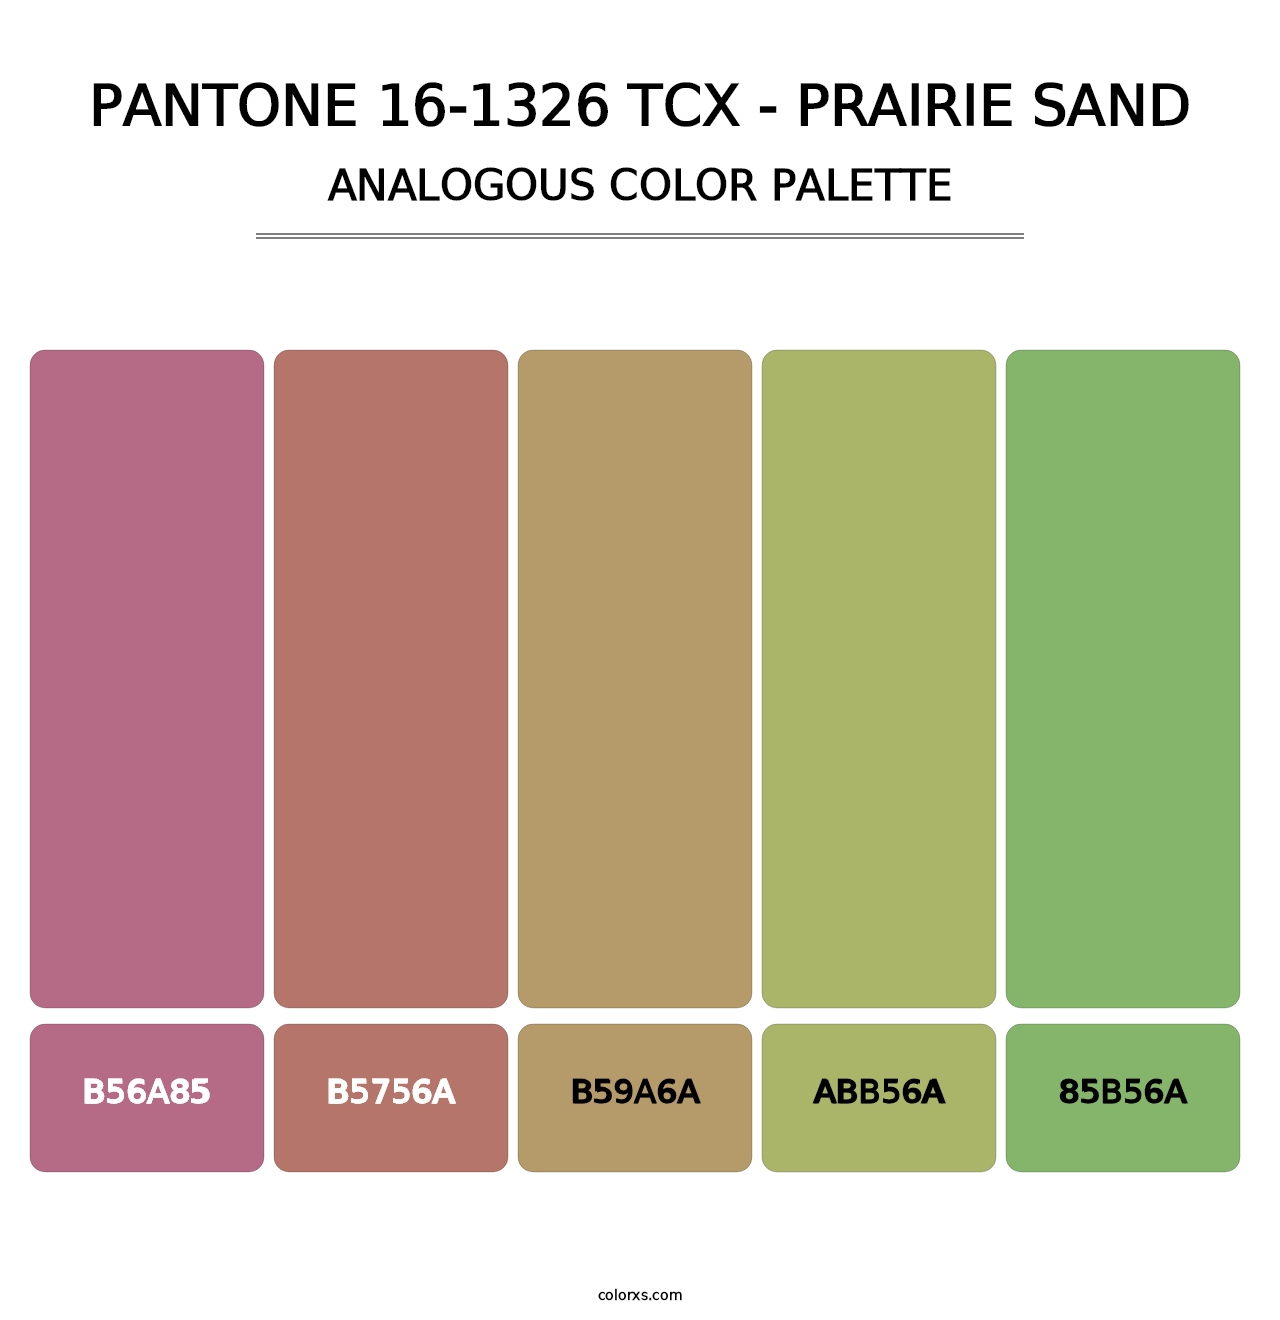 PANTONE 16-1326 TCX - Prairie Sand - Analogous Color Palette